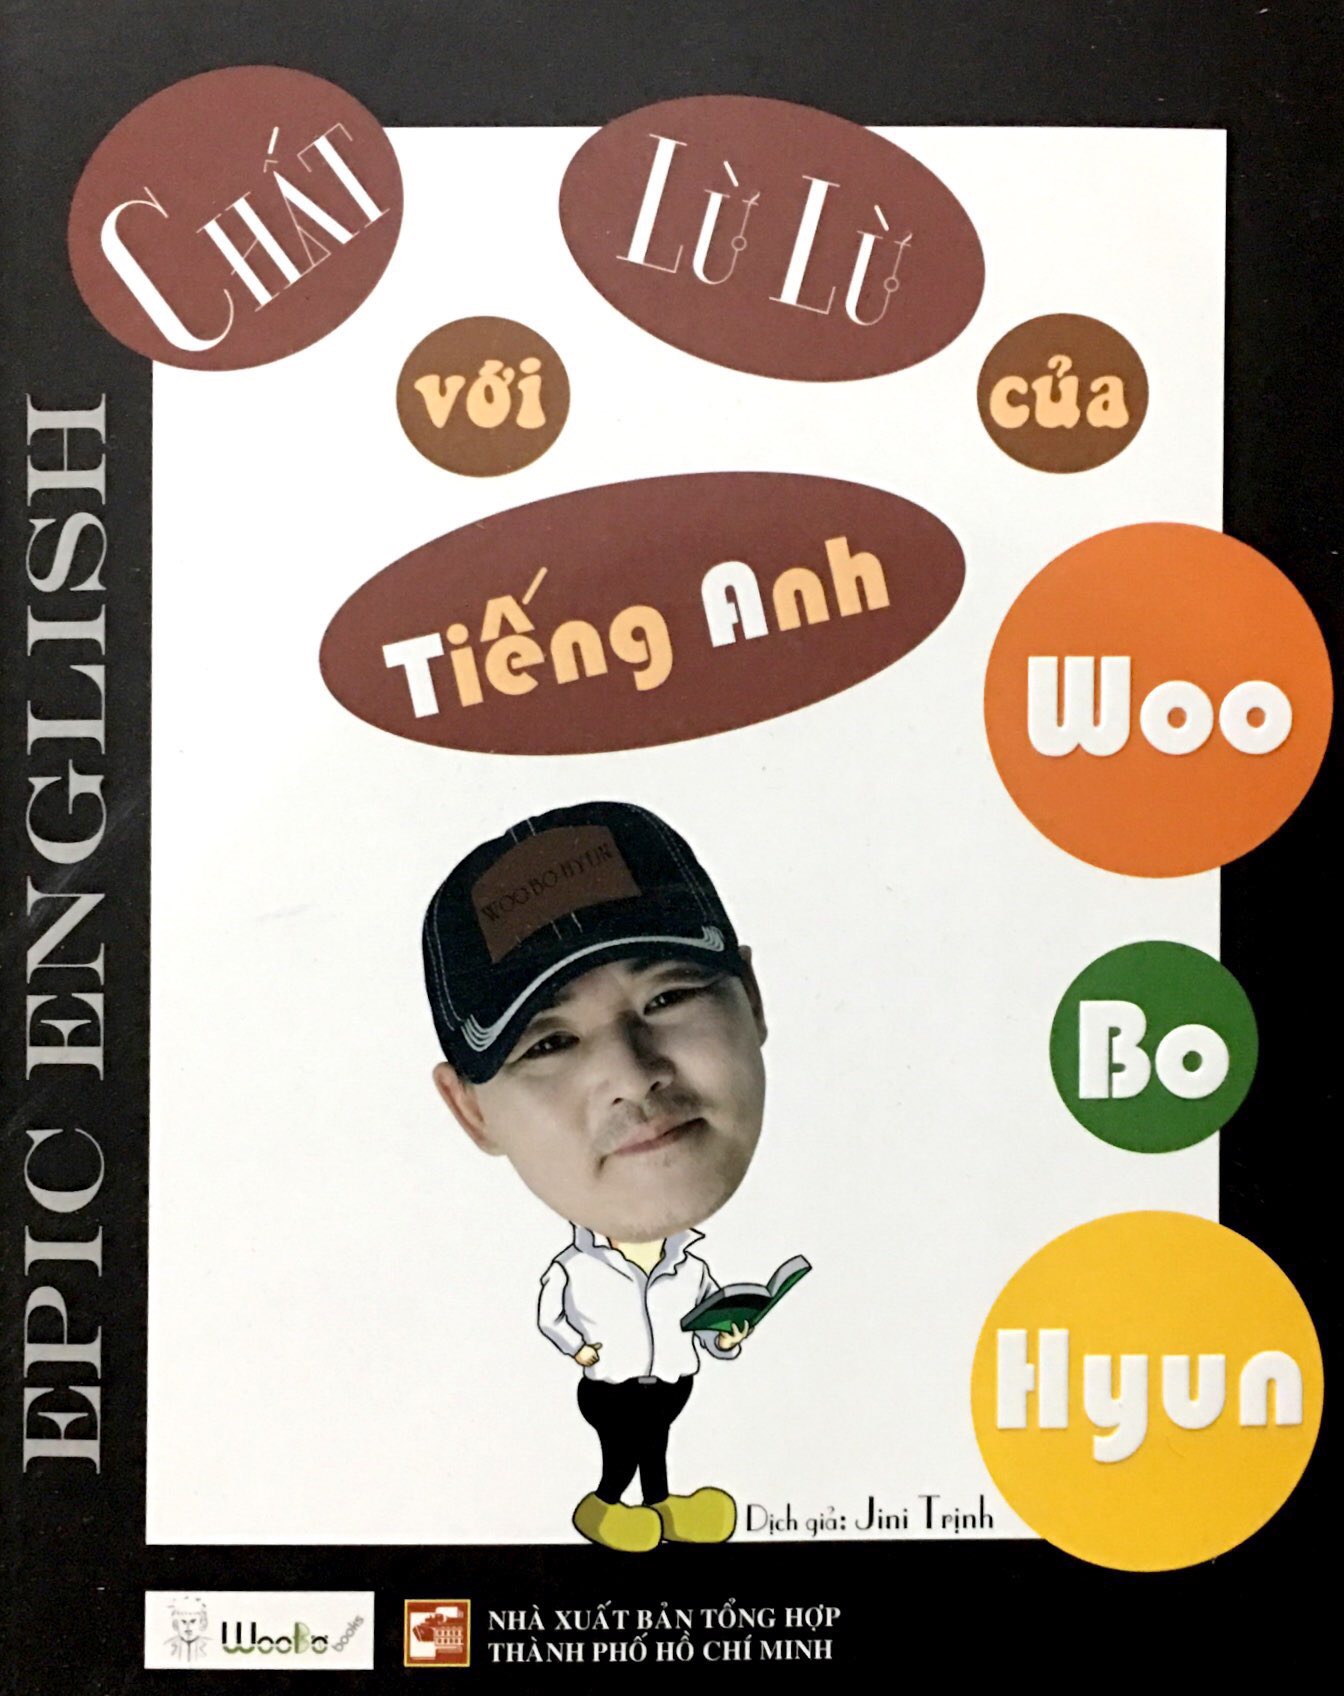 Chất Lừ Lừ Với Tiếng Anh Woo Bo Hyun Epic English PDF